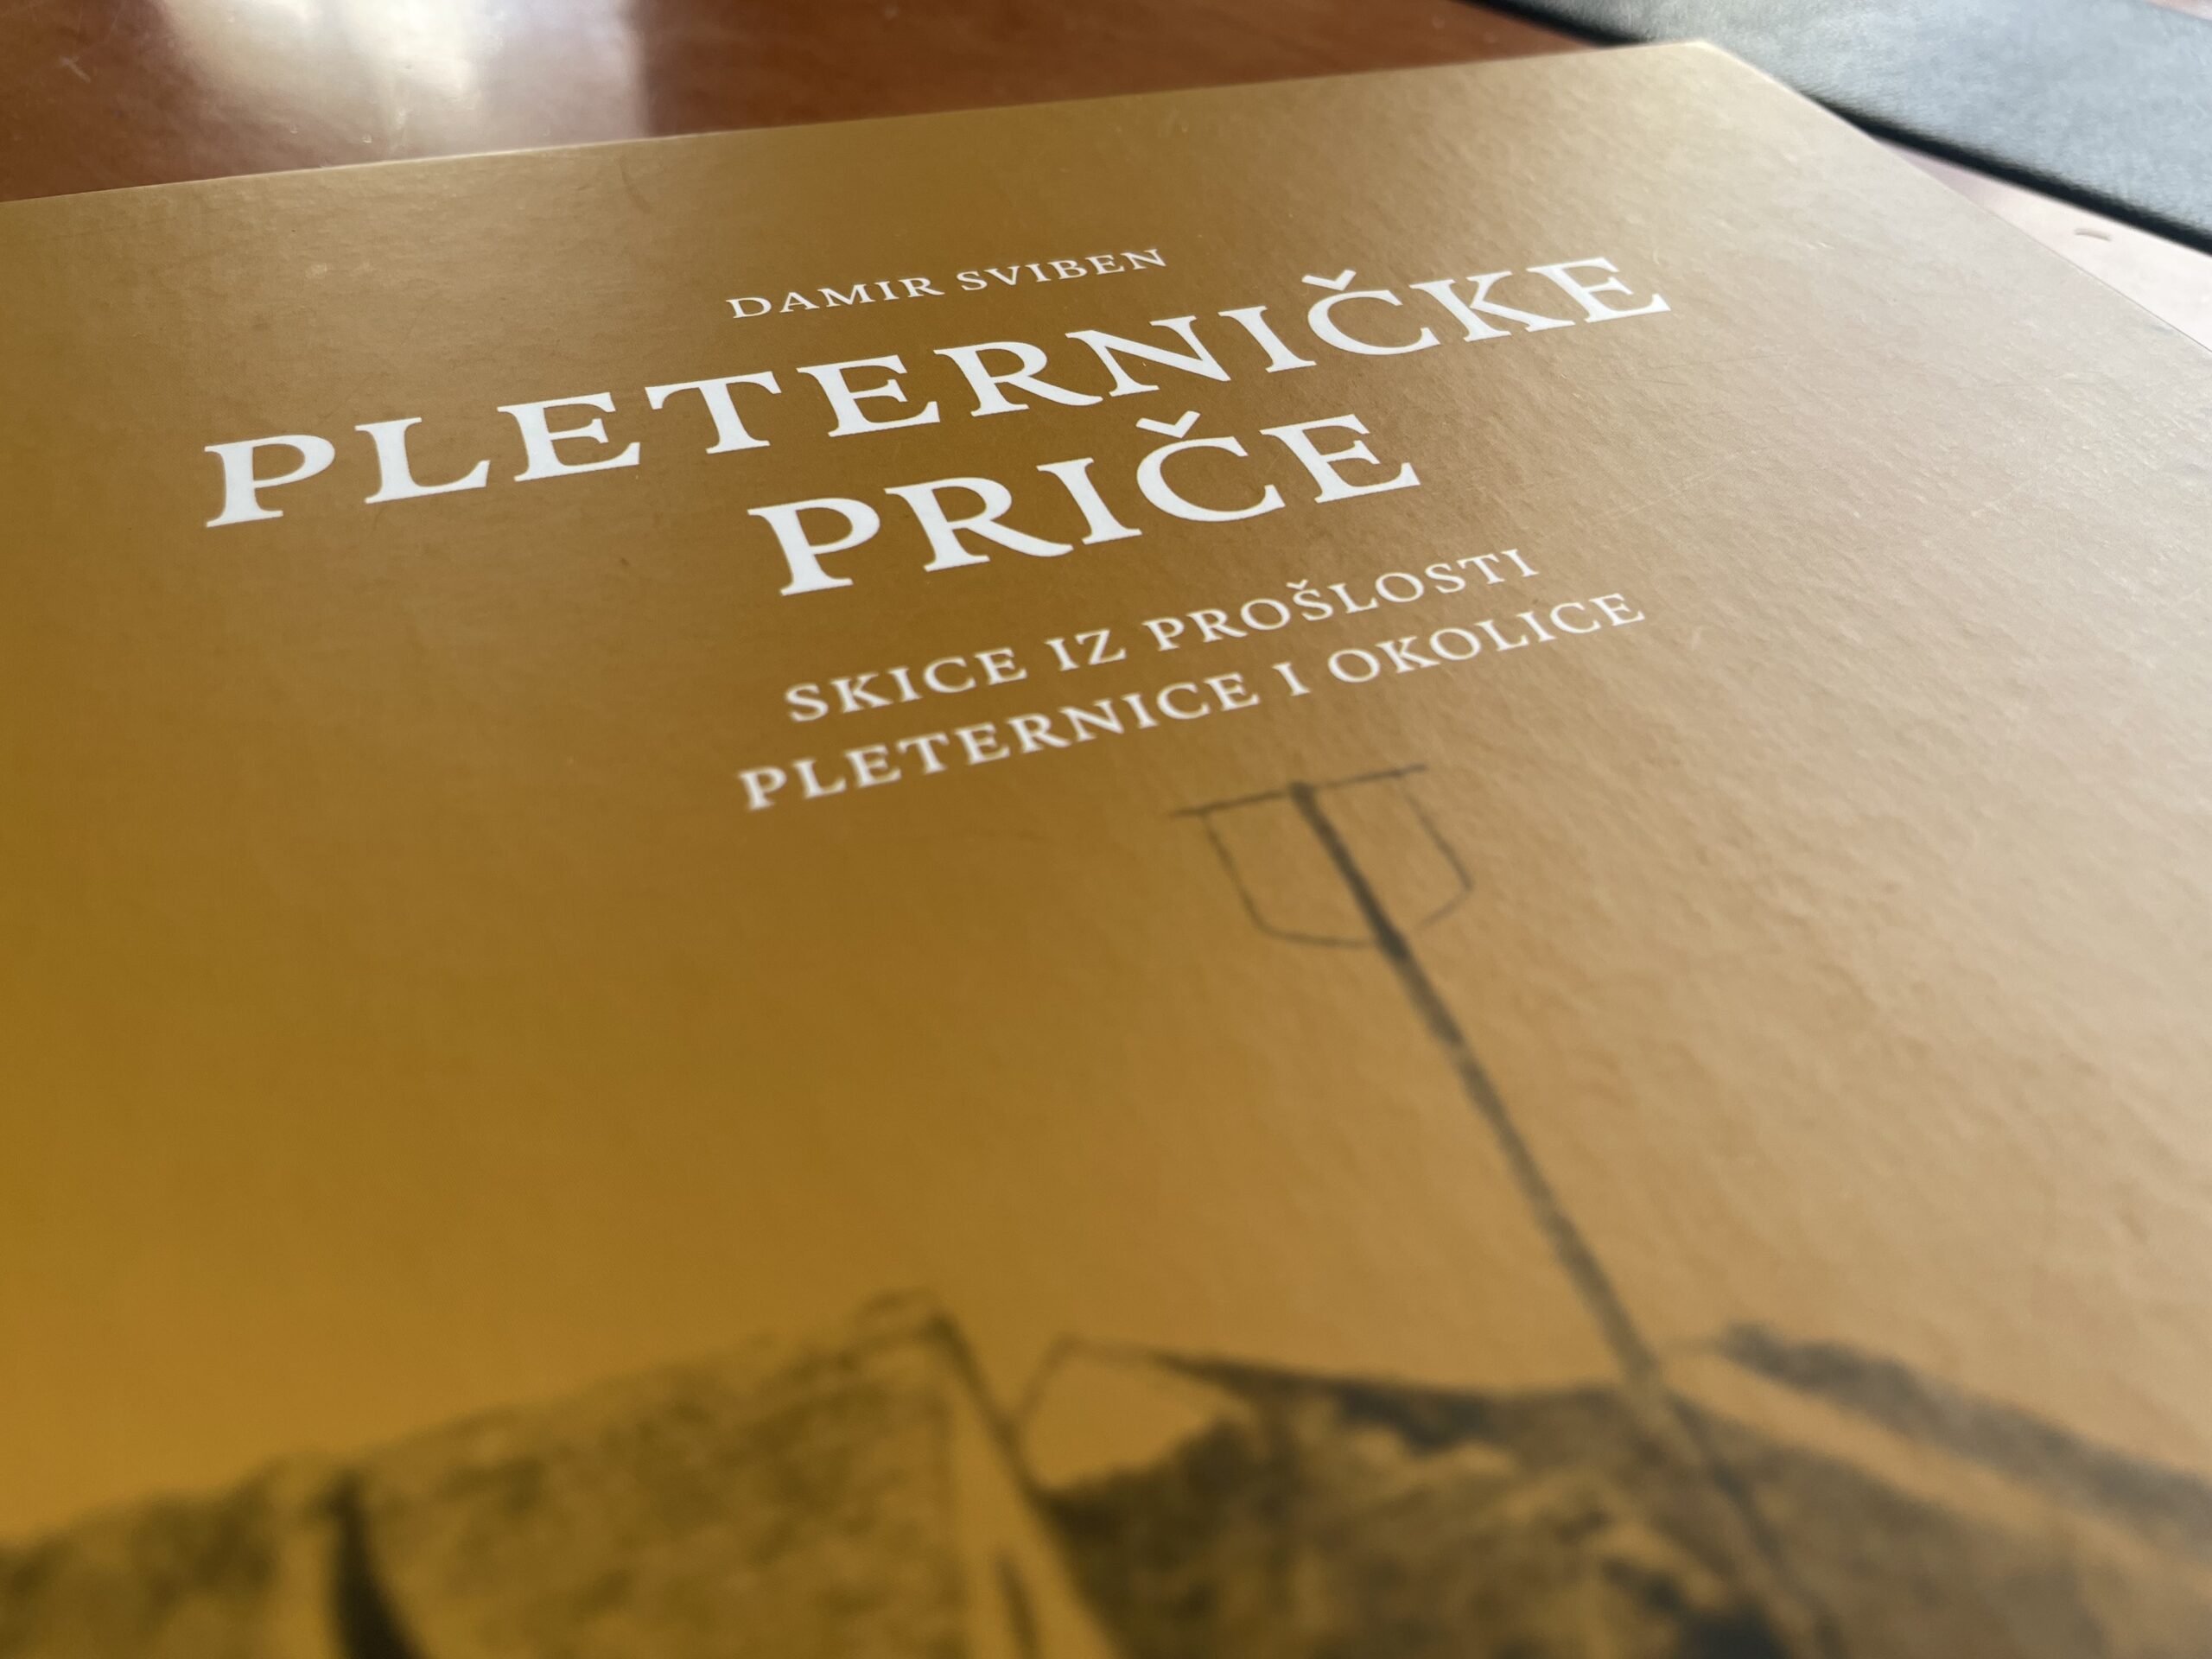 Dugo iščekivana knjiga Damira Svibena poklon Pleternici u povodu 26. obljetnice proglašenja Pleternice gradom